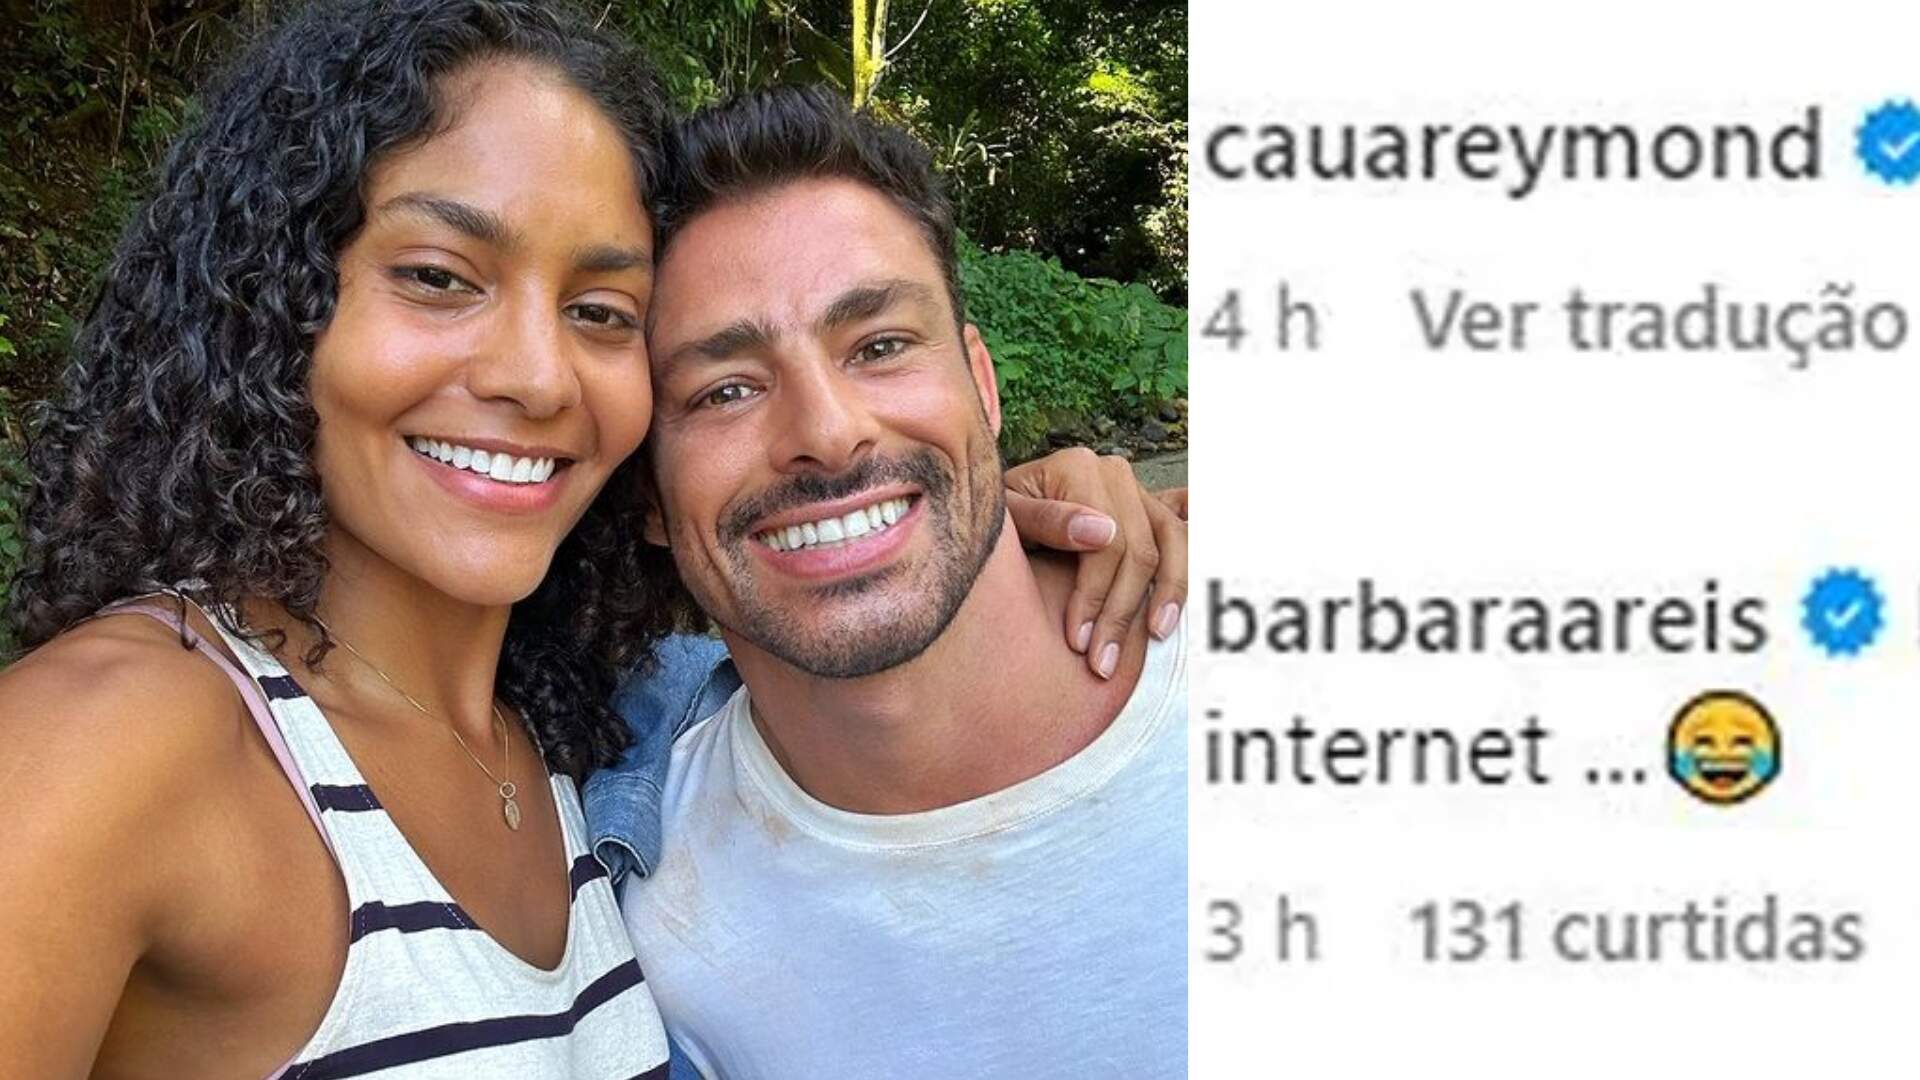 Protagonistas de ‘Terra e Paixão’, Cauã Reymond e Barbara Reis, trocam “farpas” nas redes sociais! - Metropolitana FM